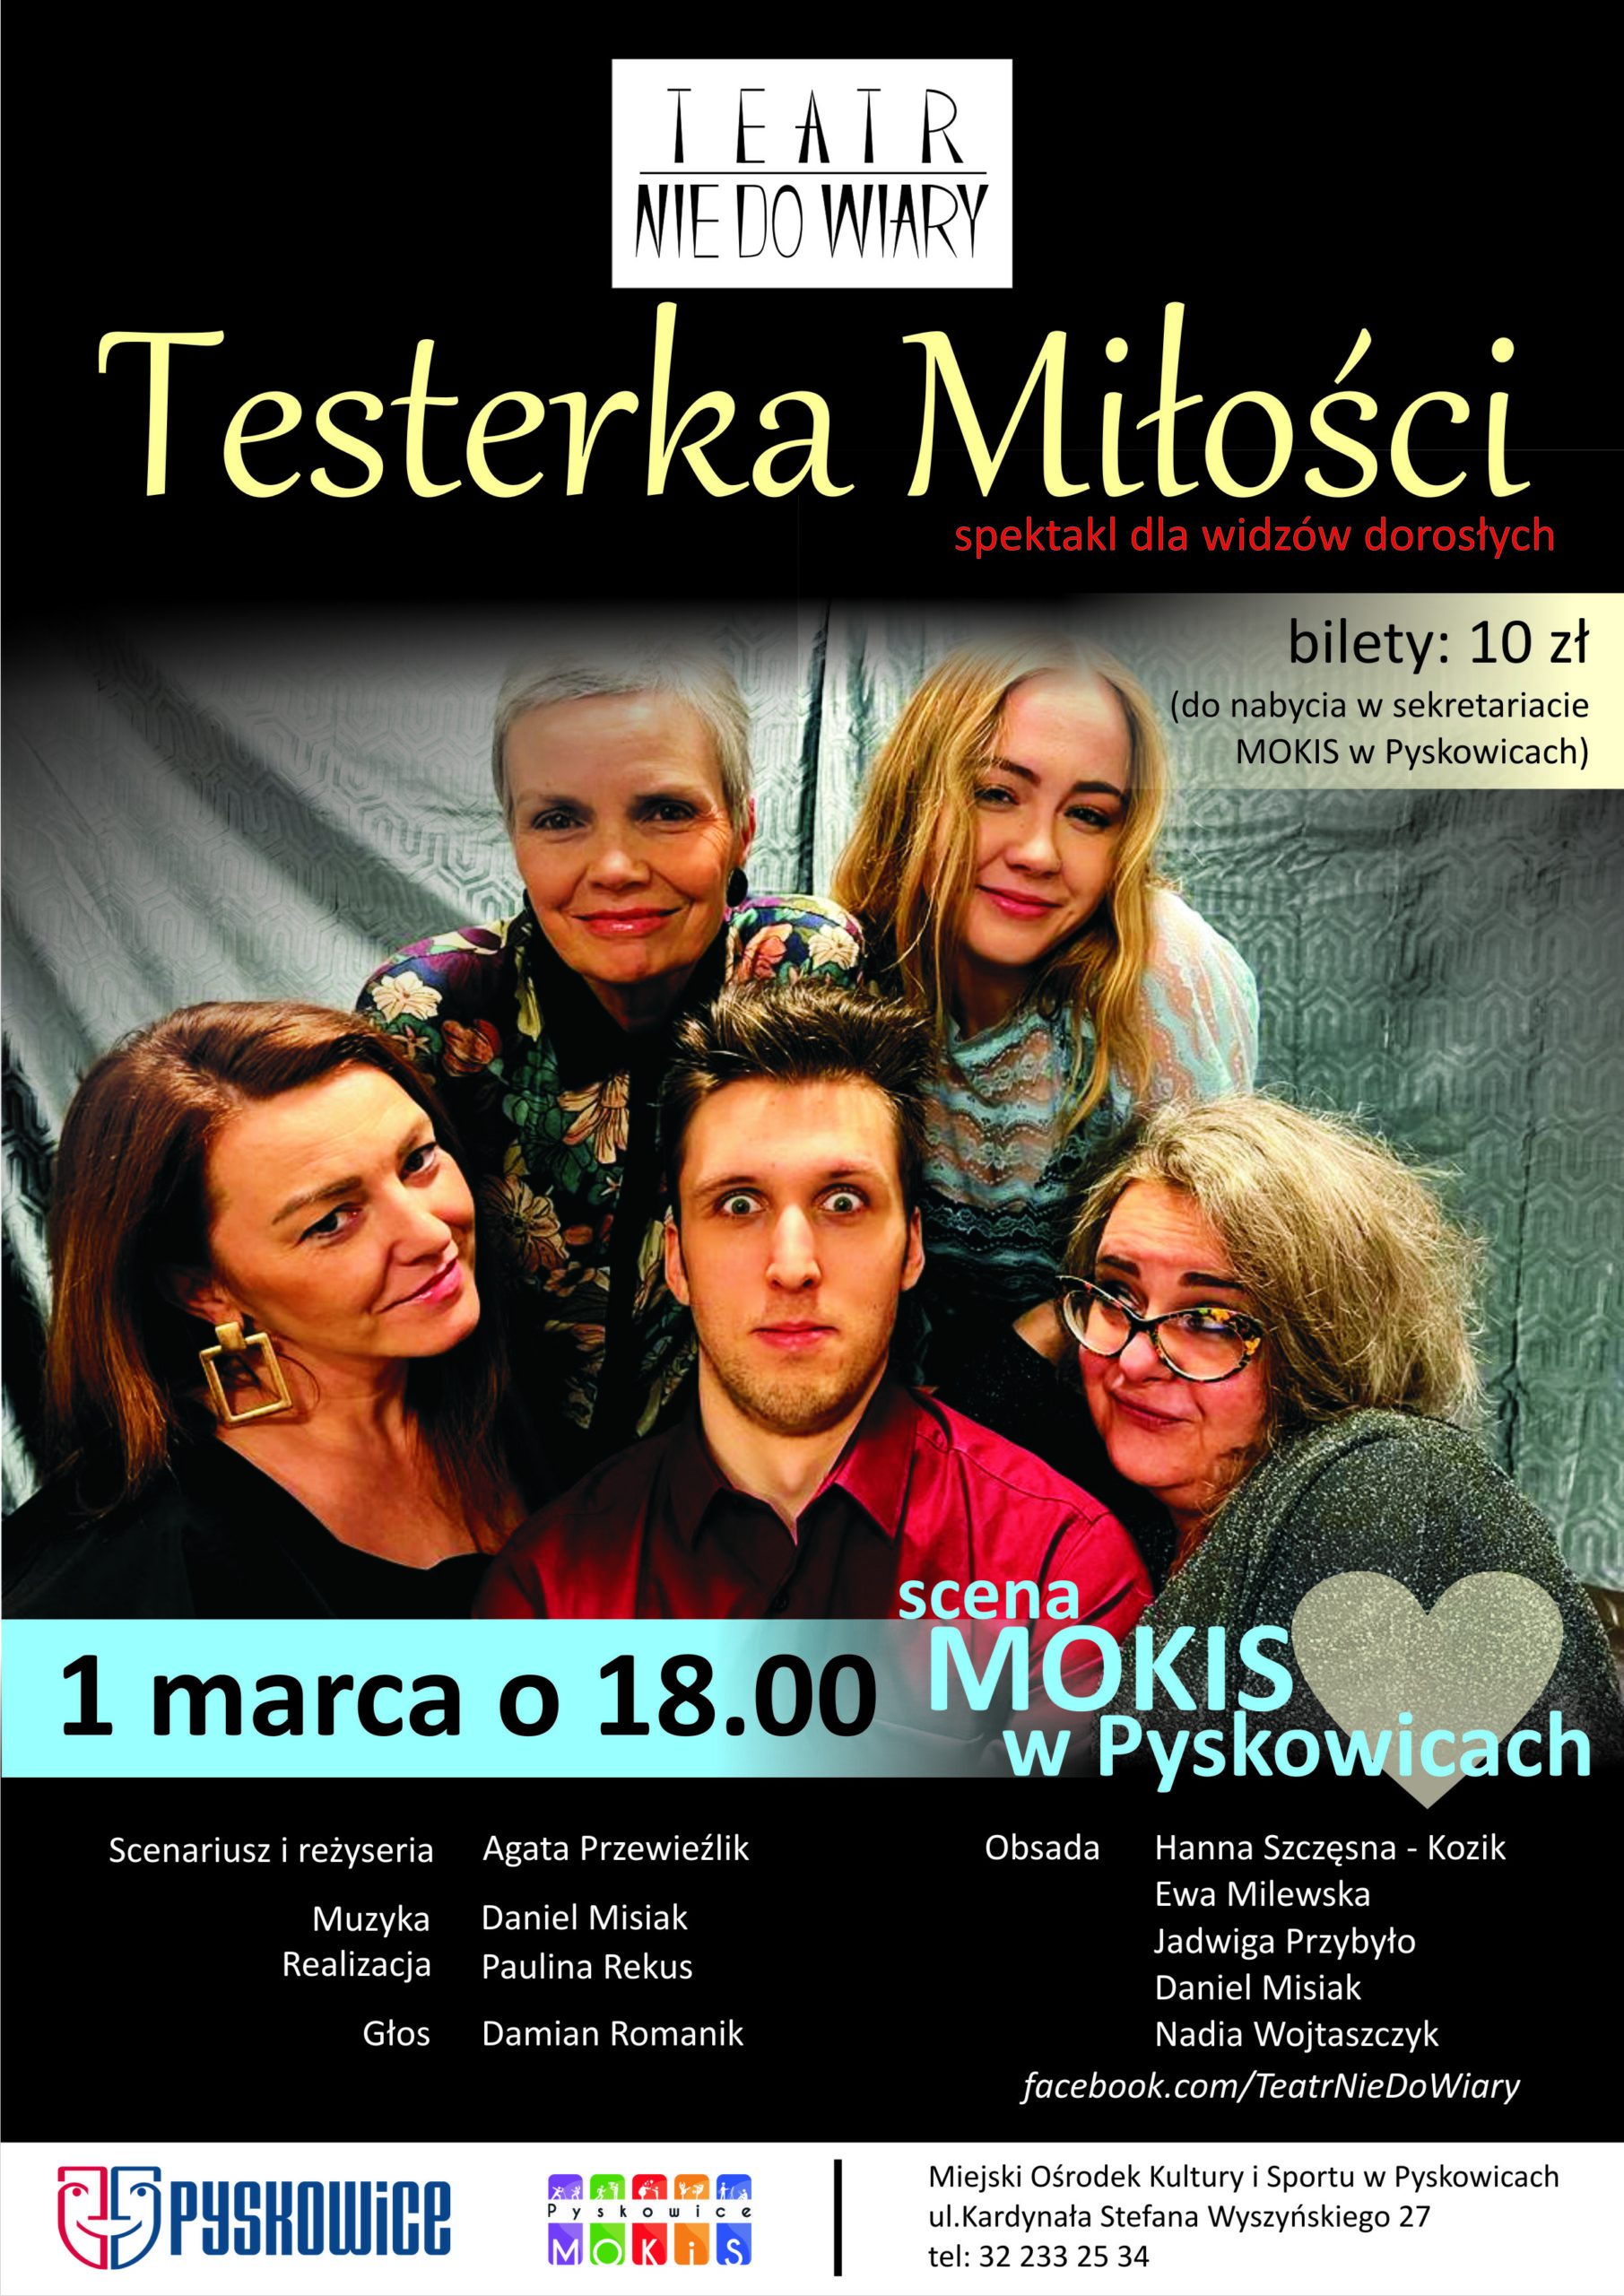 Plakat promujący spektakl teatralny teatru Nie Do Wiary "Testerka Miłości"